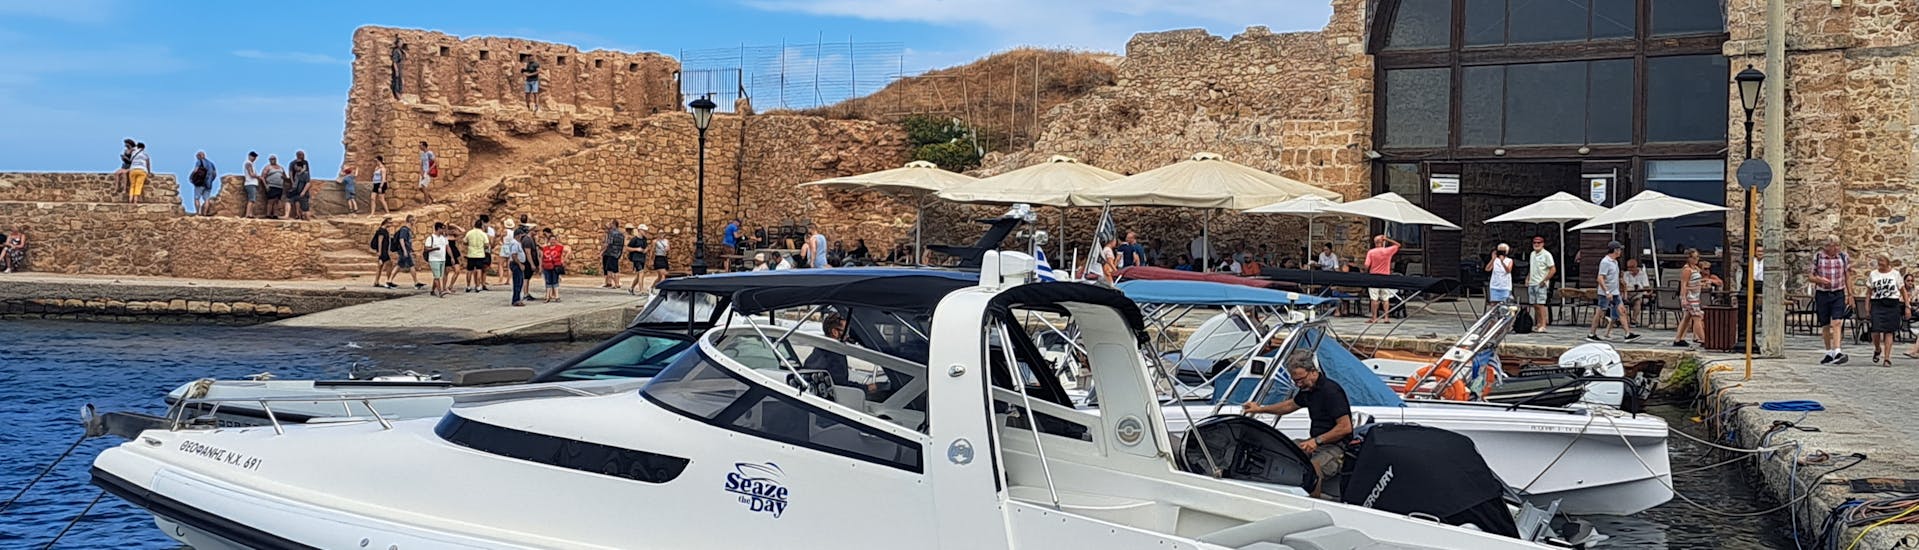 Immagine di un gommone in acqua durante una gita in barca organizzata da SEAze The Day Crete.